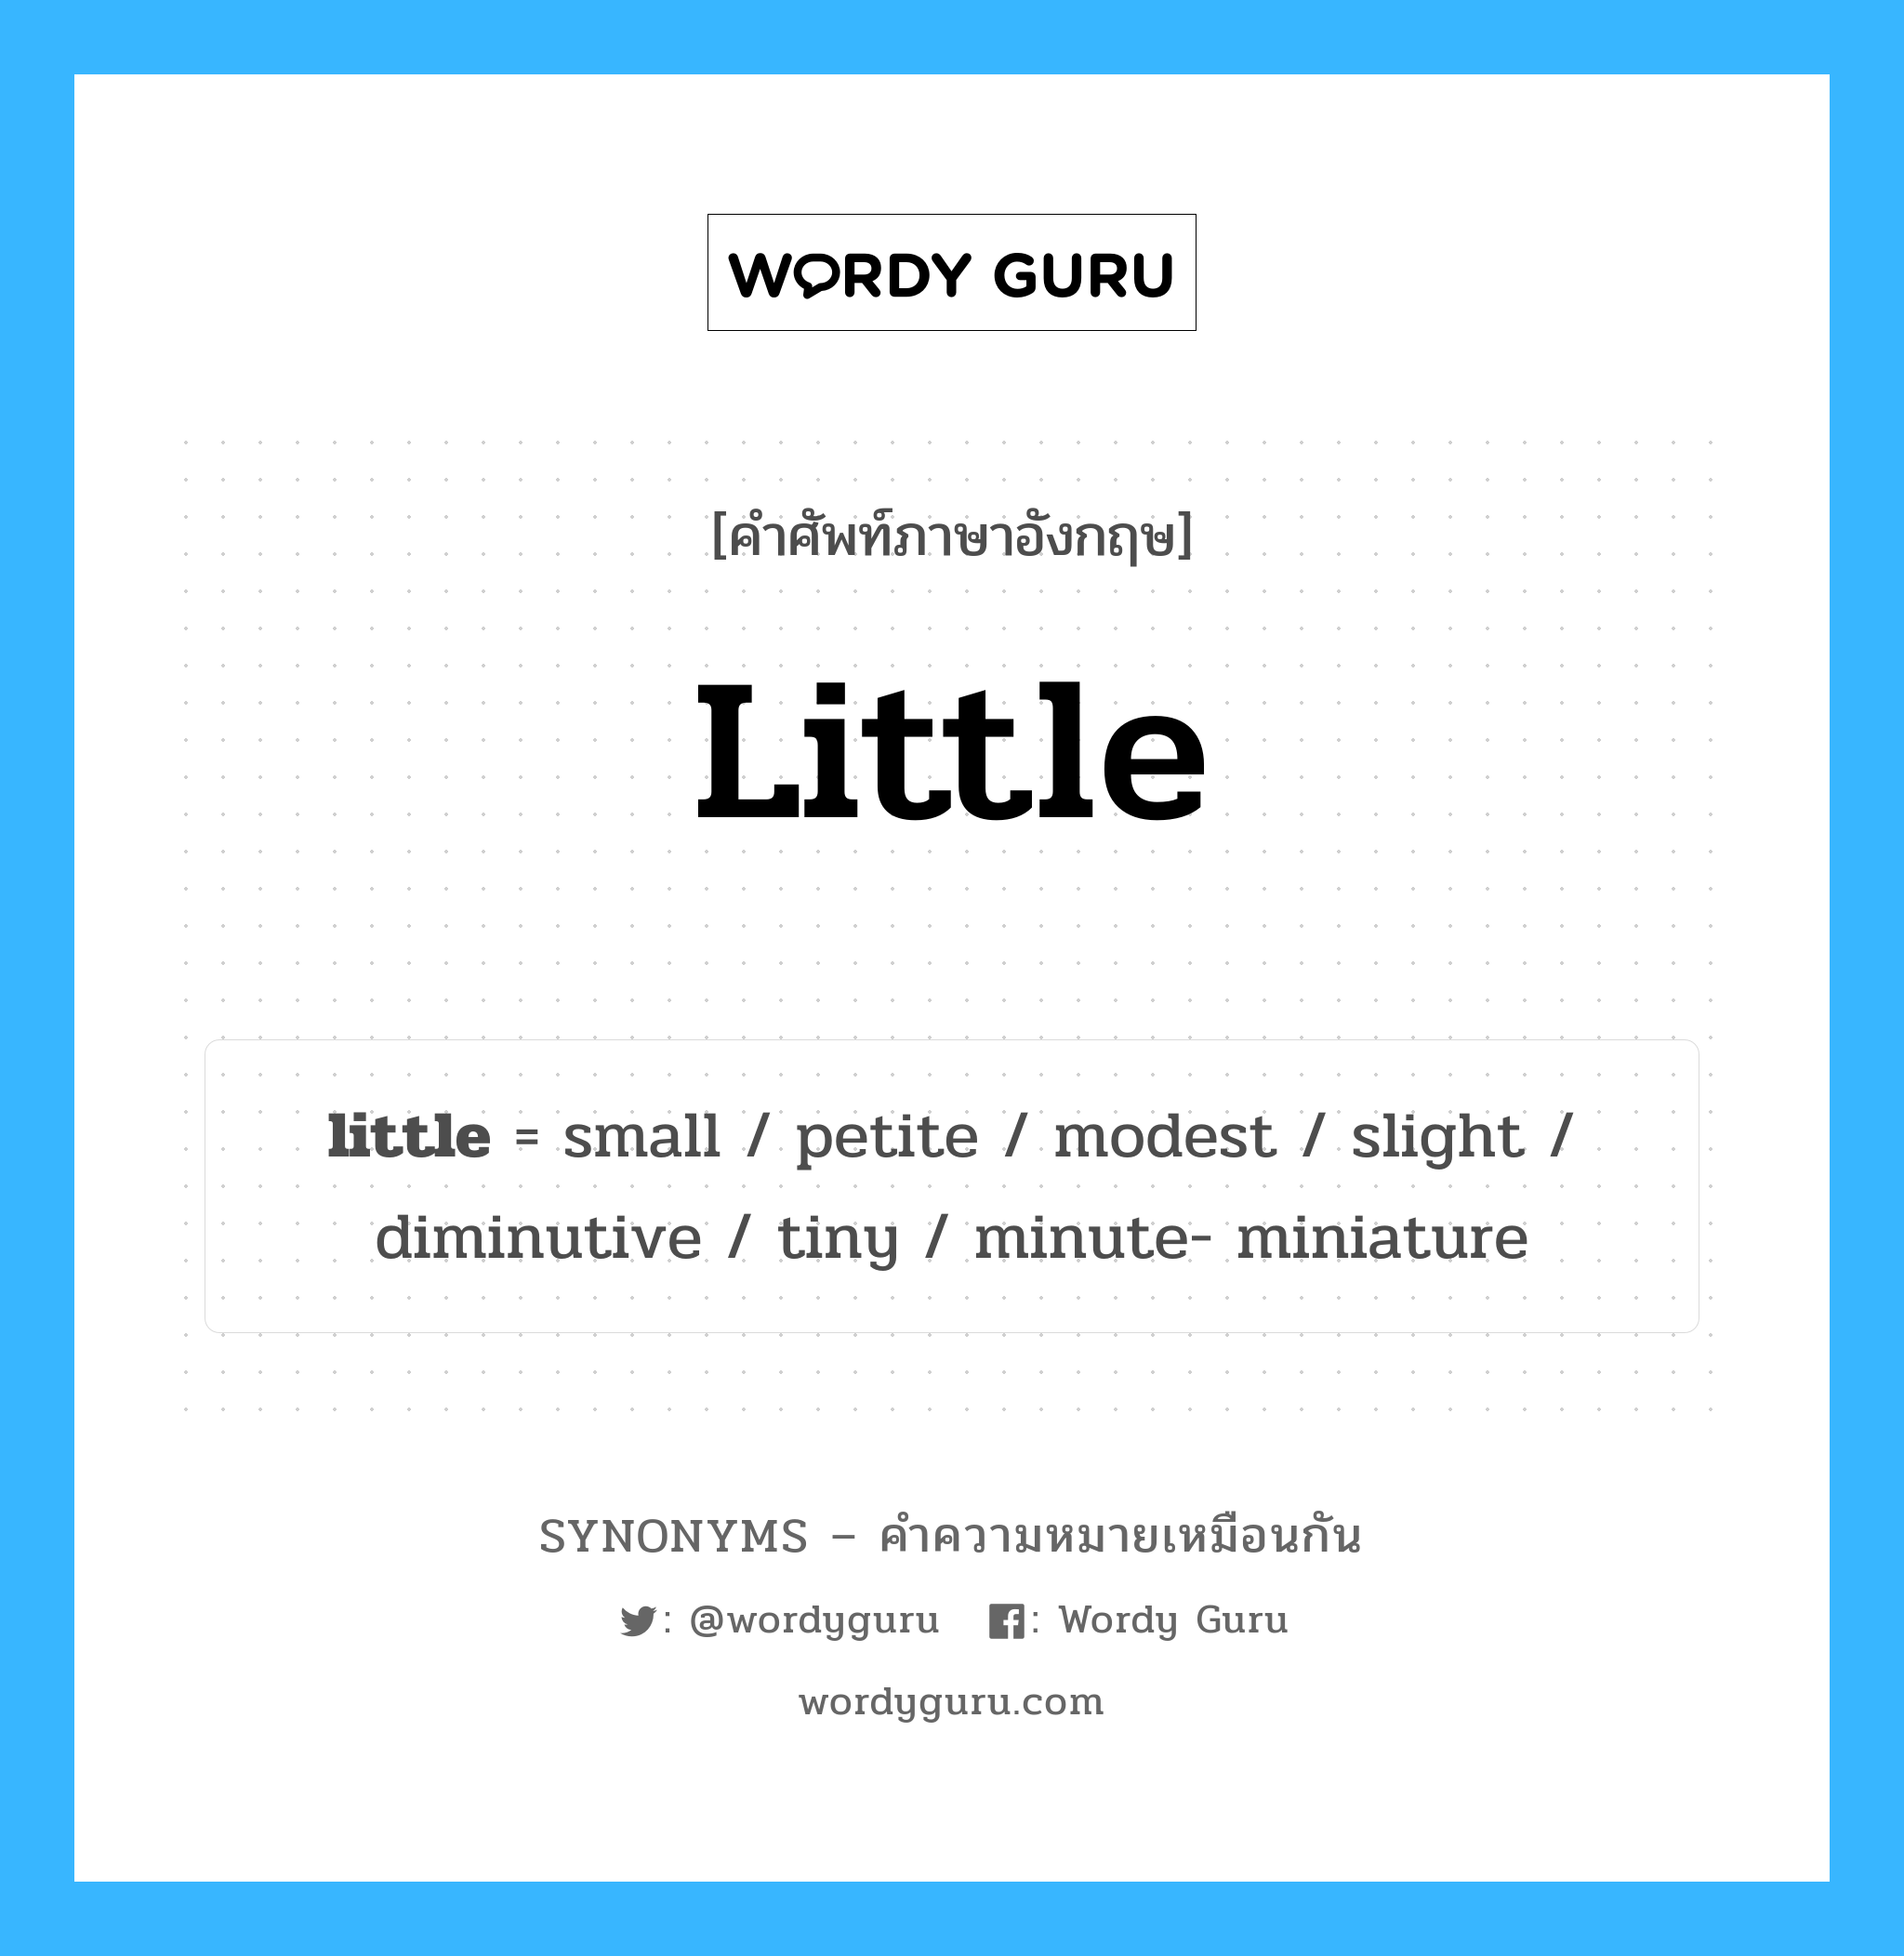 slight เป็นหนึ่งใน little และมีคำอื่น ๆ อีกดังนี้, คำศัพท์ภาษาอังกฤษ slight ความหมายคล้ายกันกับ little แปลว่า เล็กน้อย หมวด little